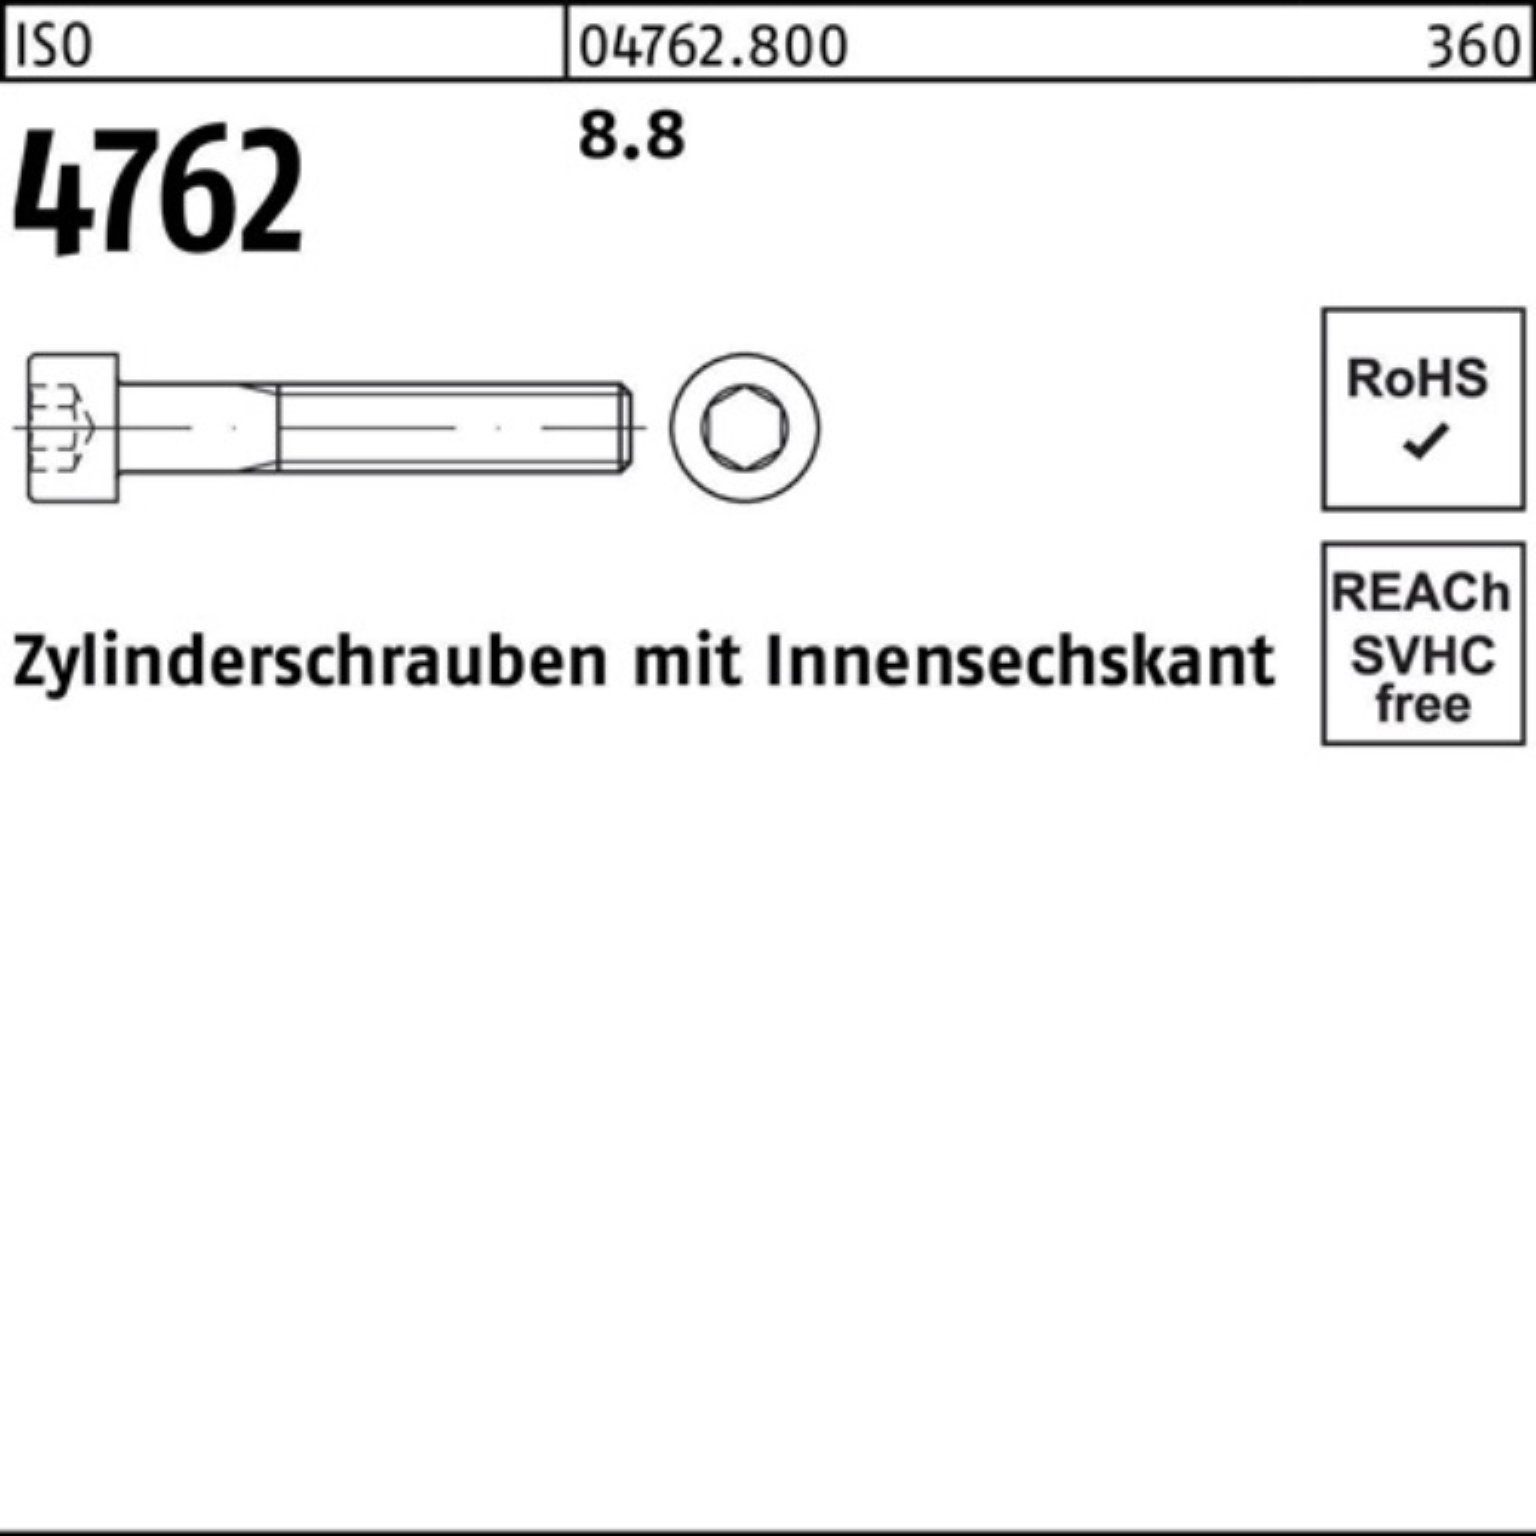 Reyher Zylinderschraube 100er Zylinderschraube Innen-6kt M36x 4762 1 I 8.8 Stück ISO Pack 350